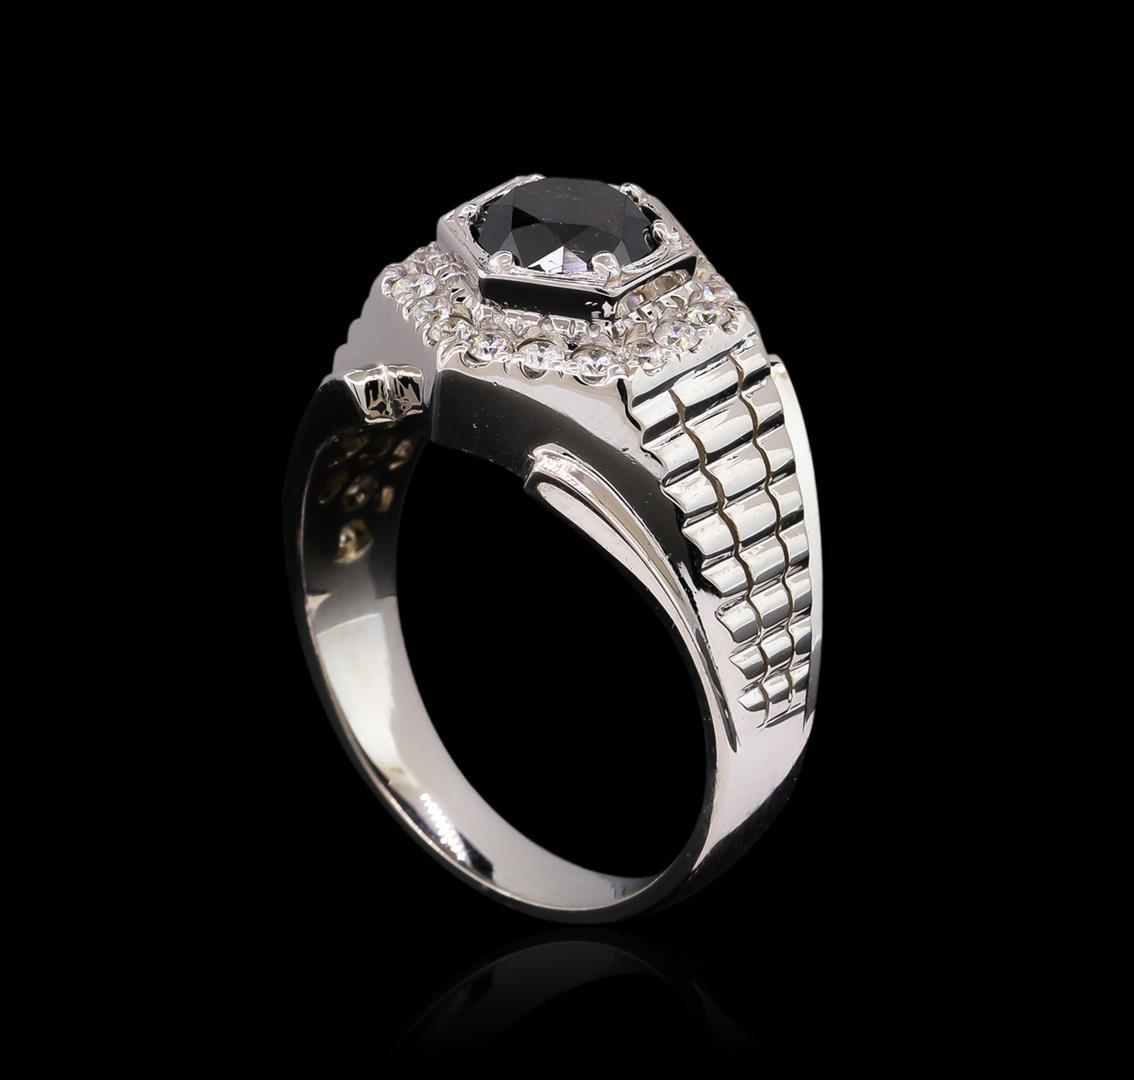 2.55 ctw Black Diamond Ring - 14KT White Gold